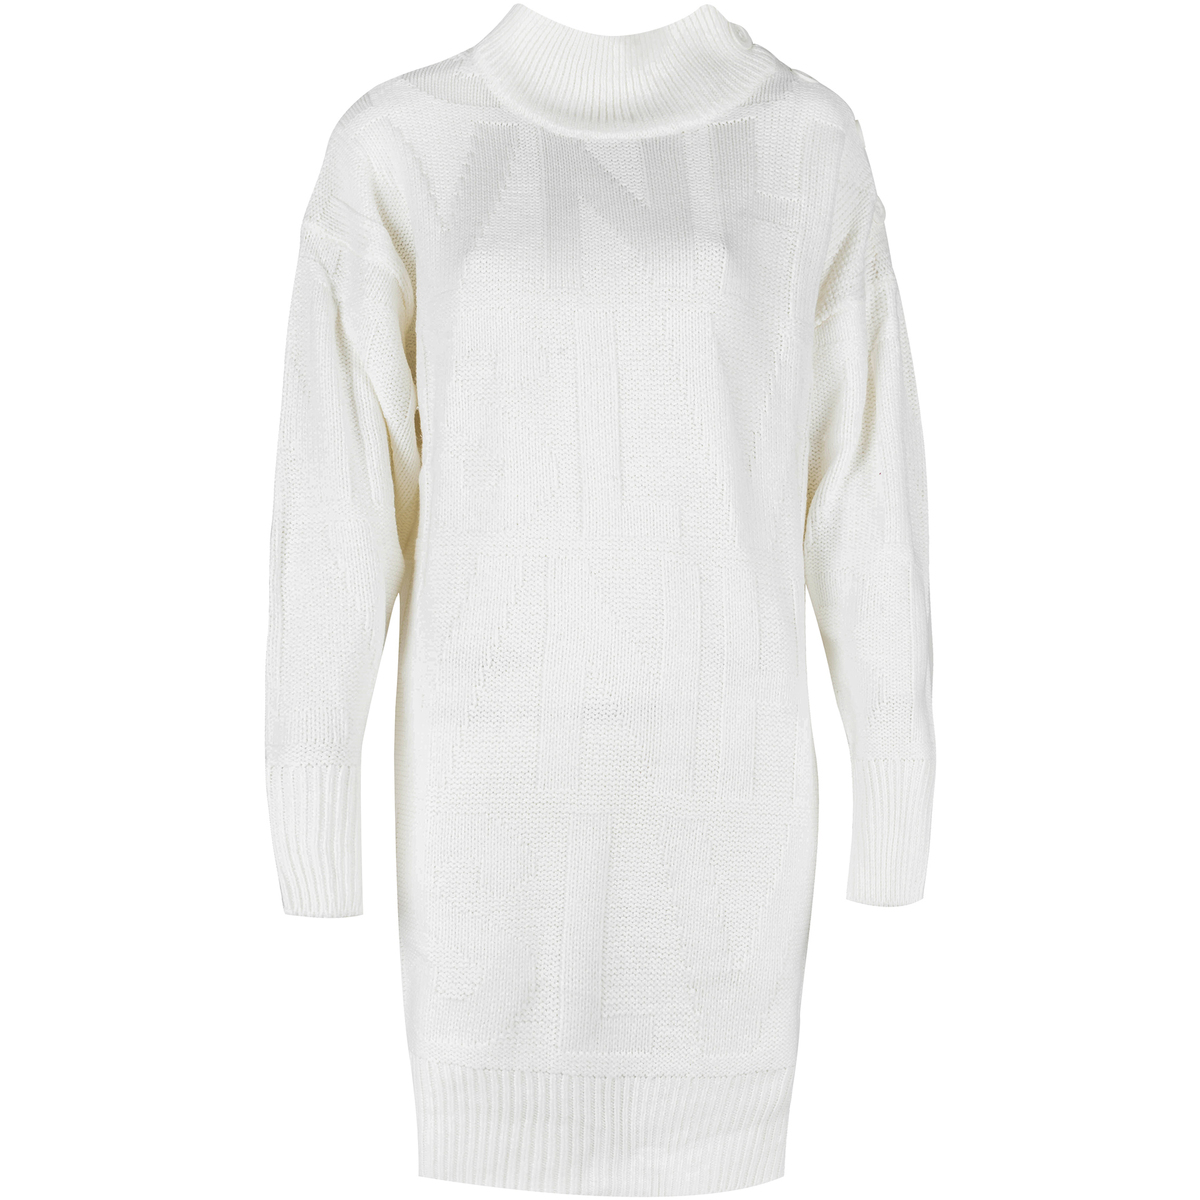 textil Dame Korte kjoler Silvian Heach PGA22087VE Hvid